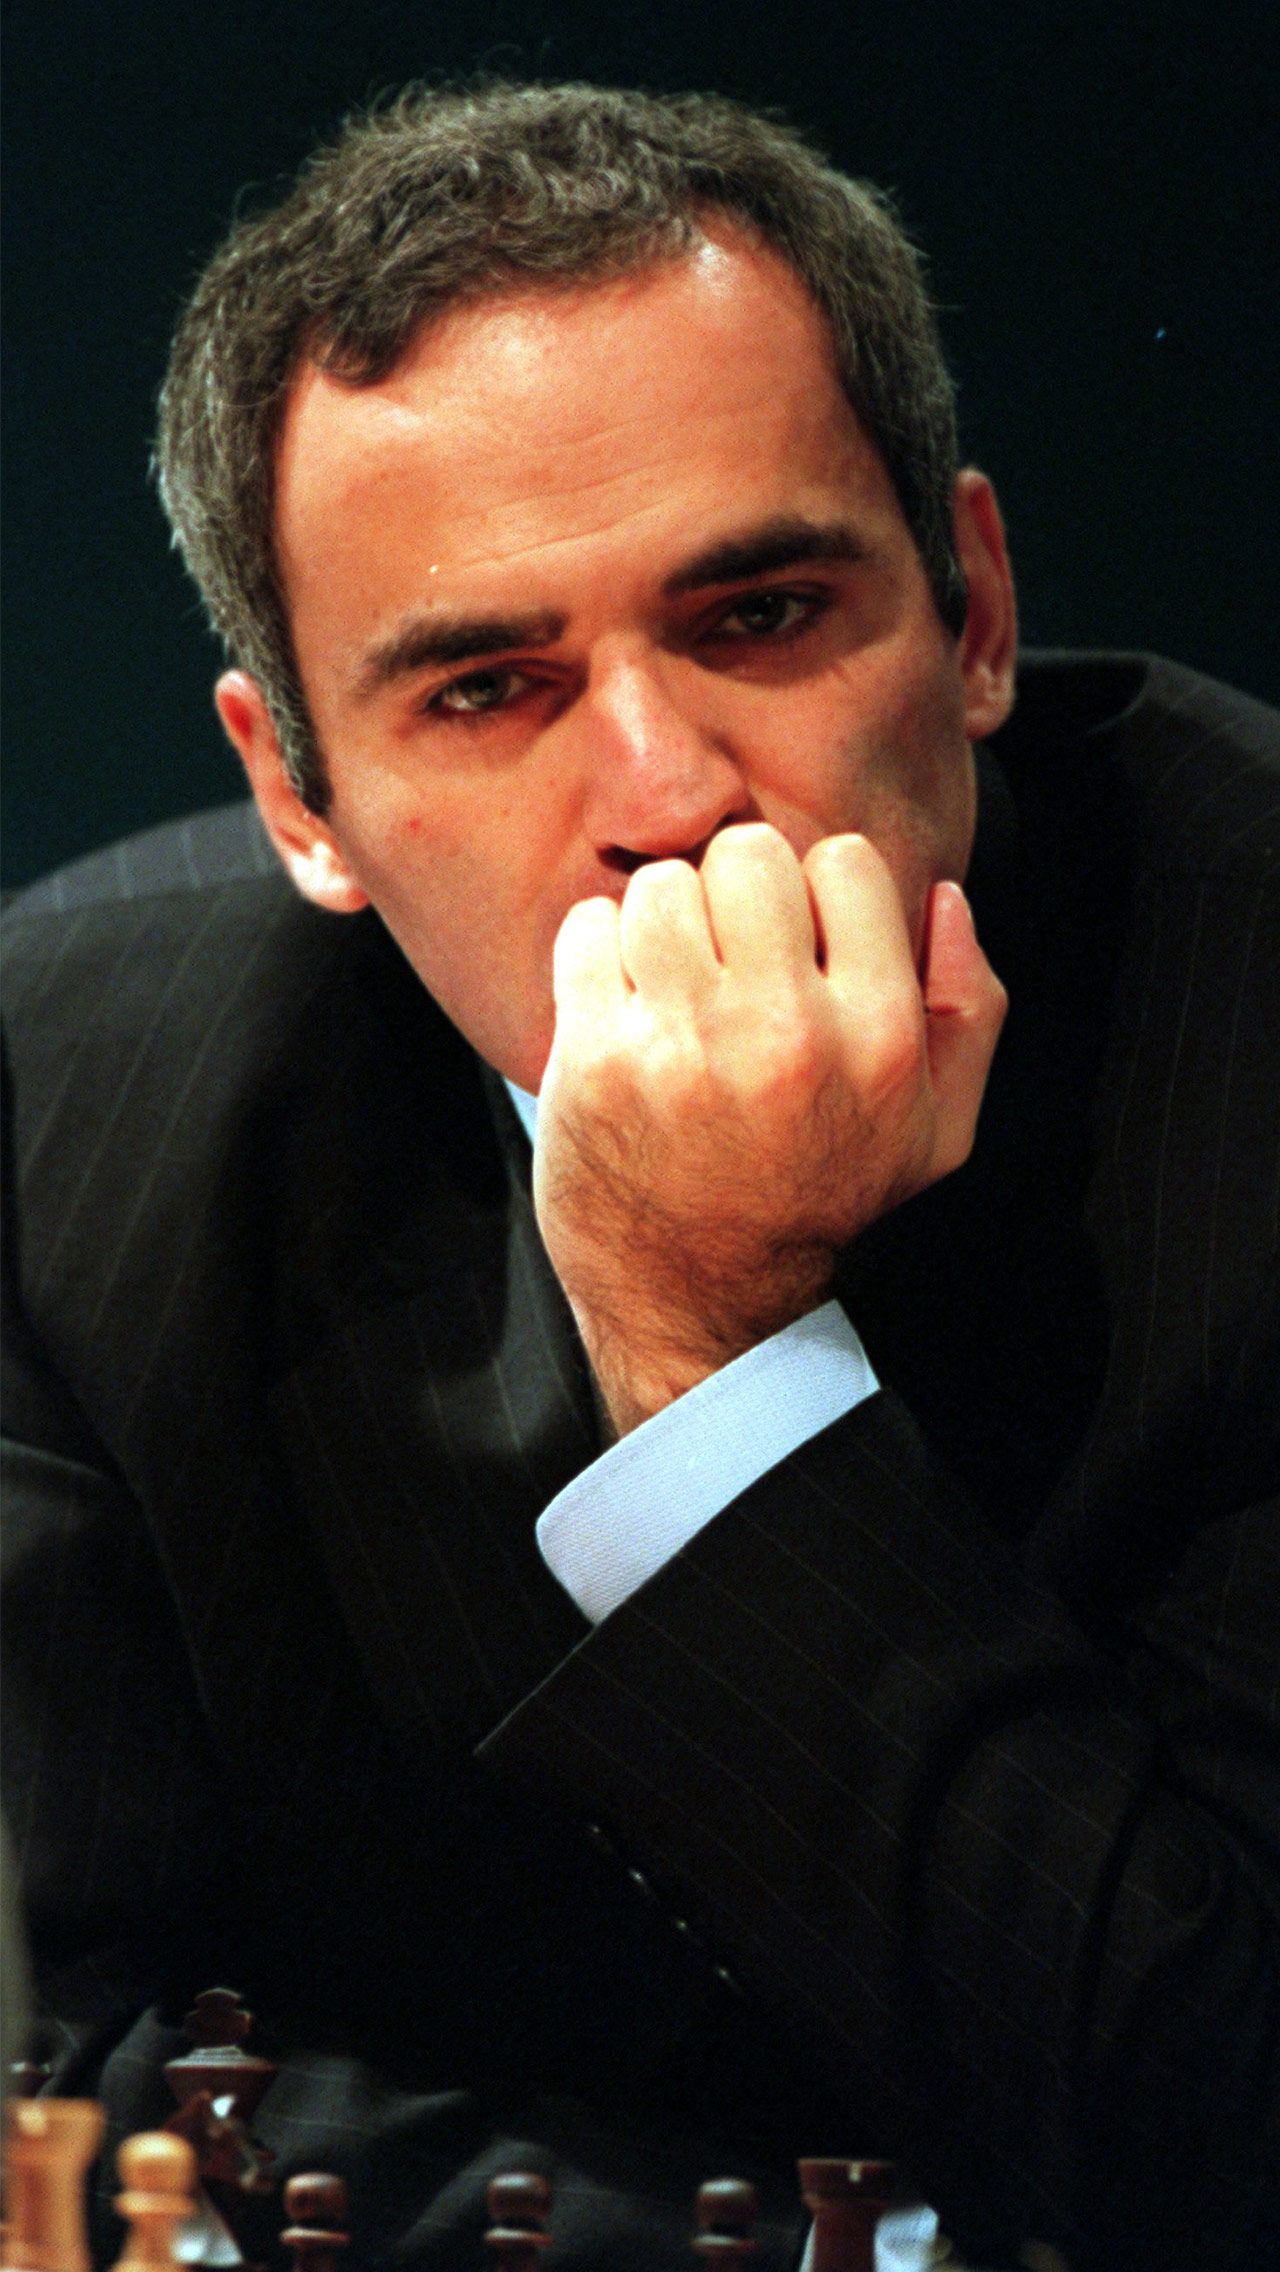 Каспаров – один из величайших шахматистов в истории. Он стал 13-м чемпионом мира, а рейтинг ФИДЕ возглавлял более 20 лет – с 1985-го по 2006-й.